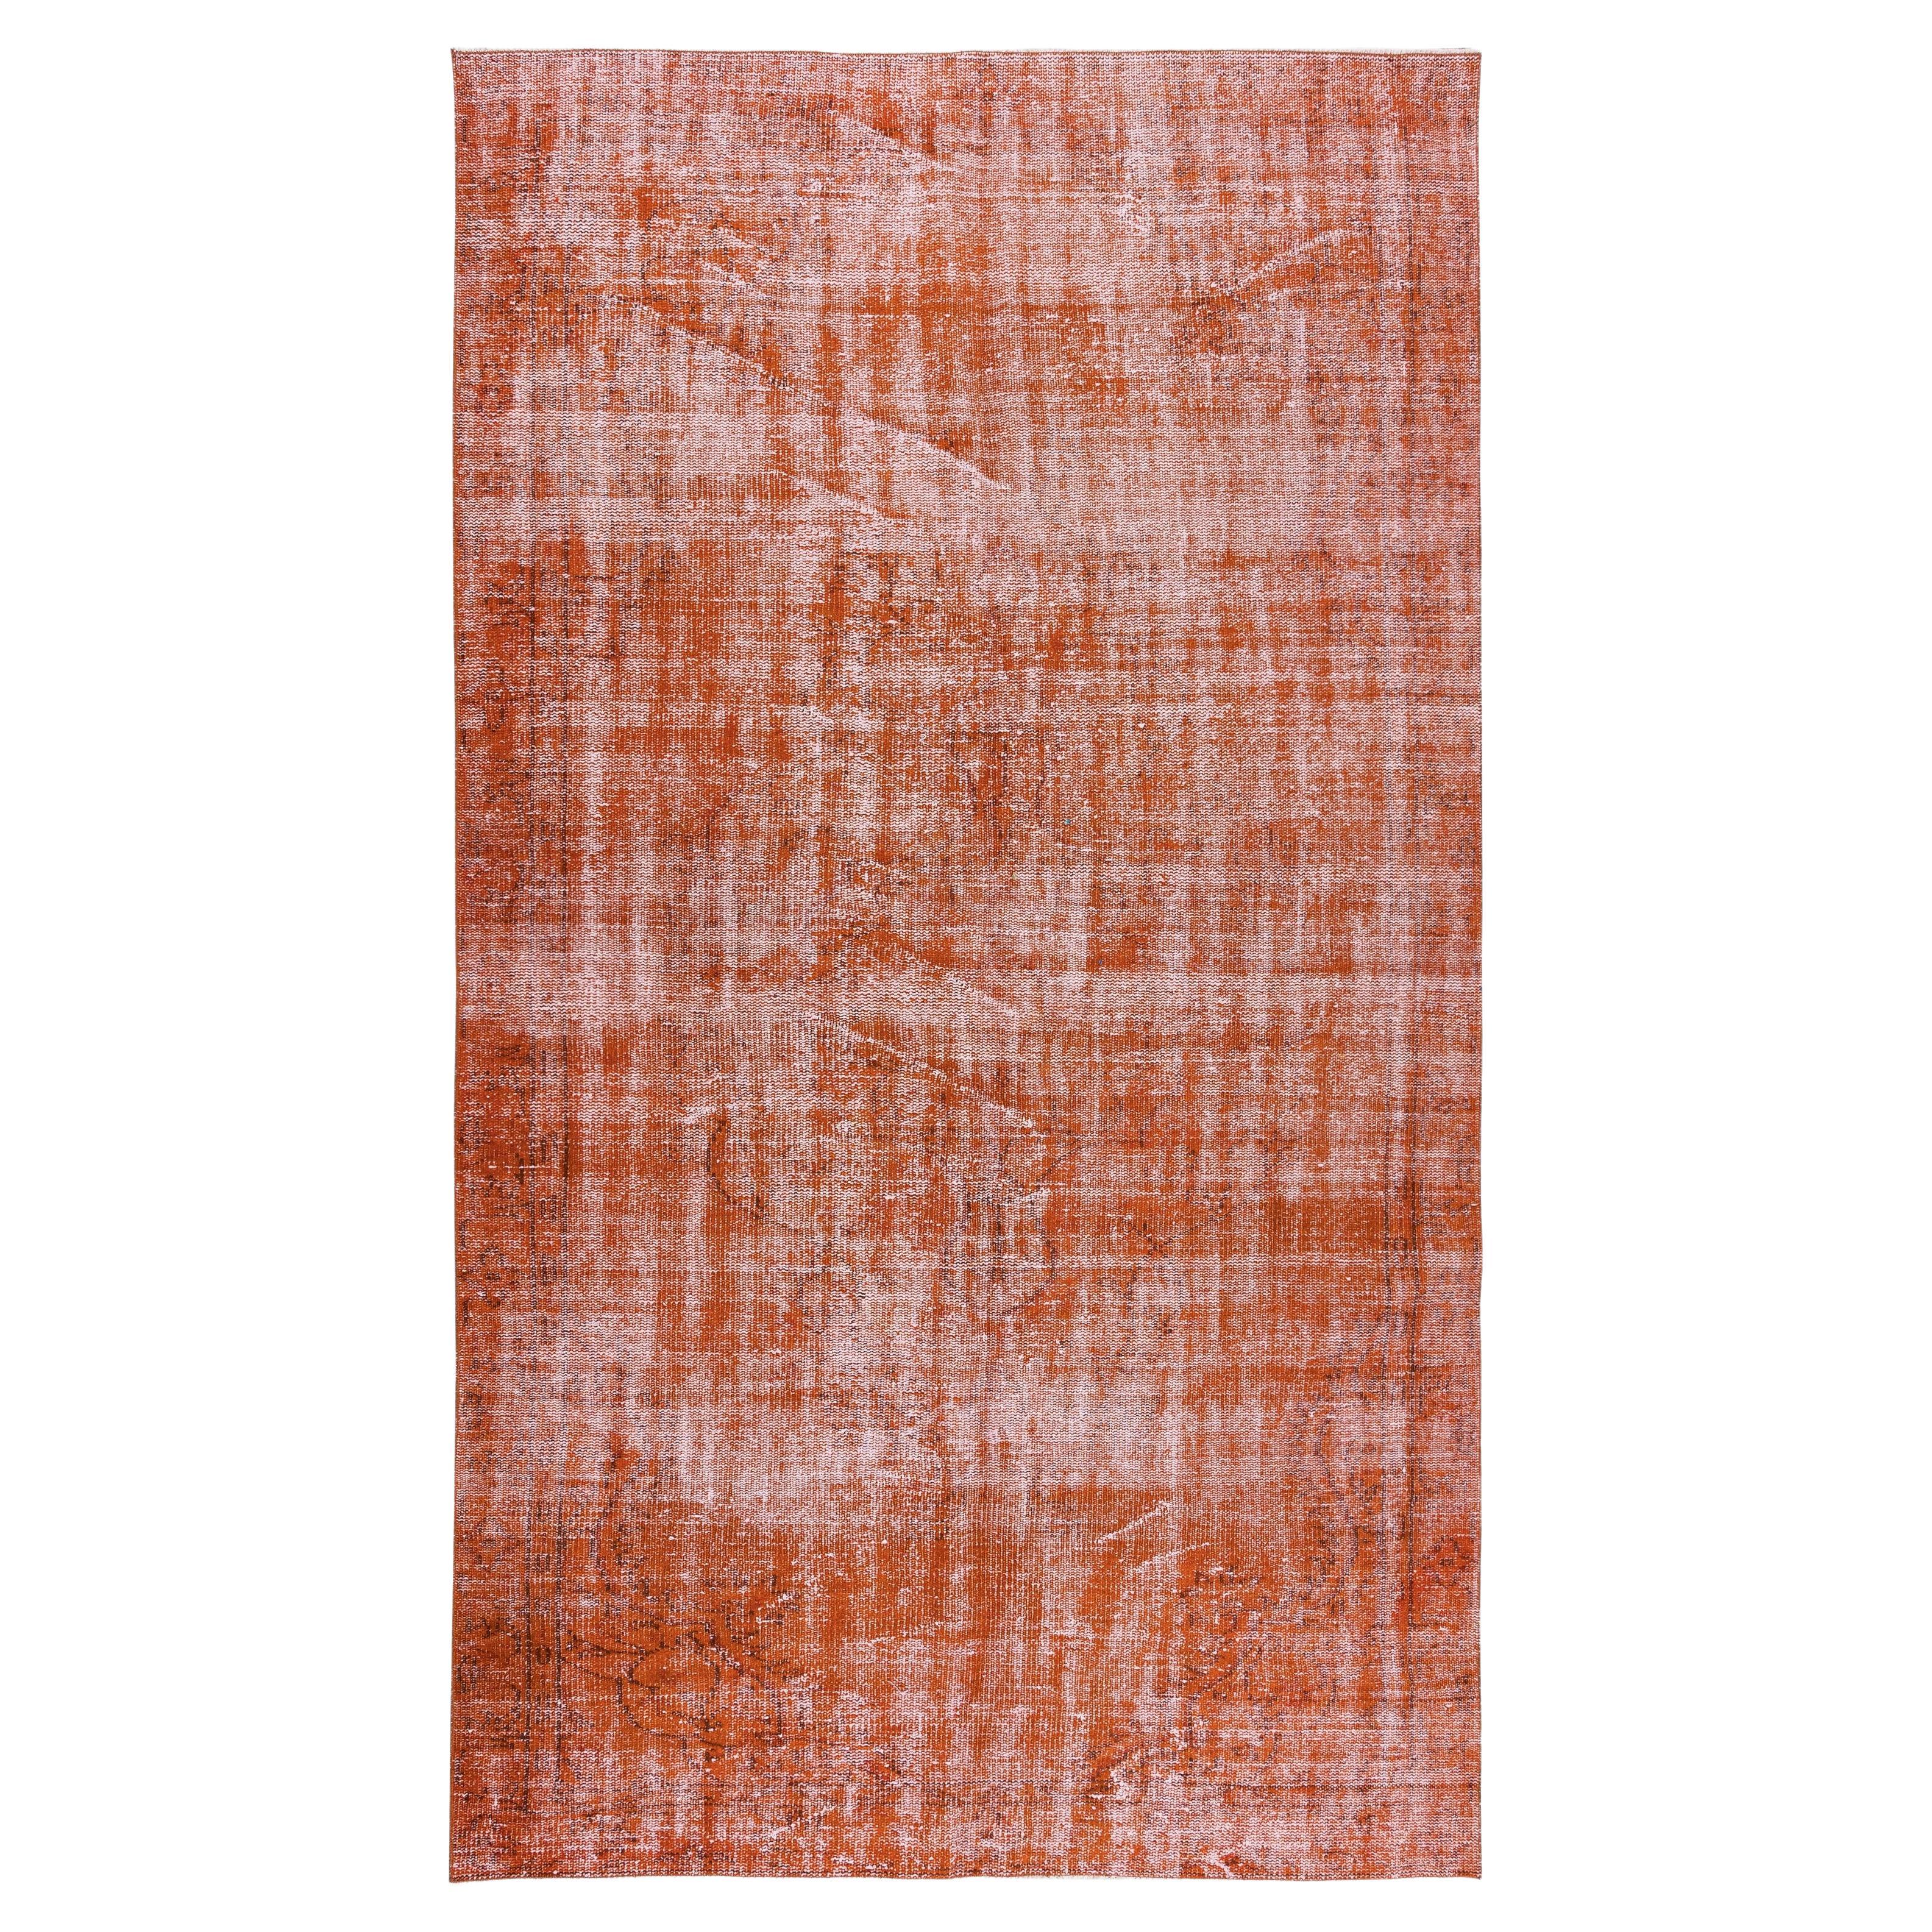 Türkischer, handgefertigter, orangefarbener Re-Dyed-Teppich für modernes Interieur, 1960er Jahre